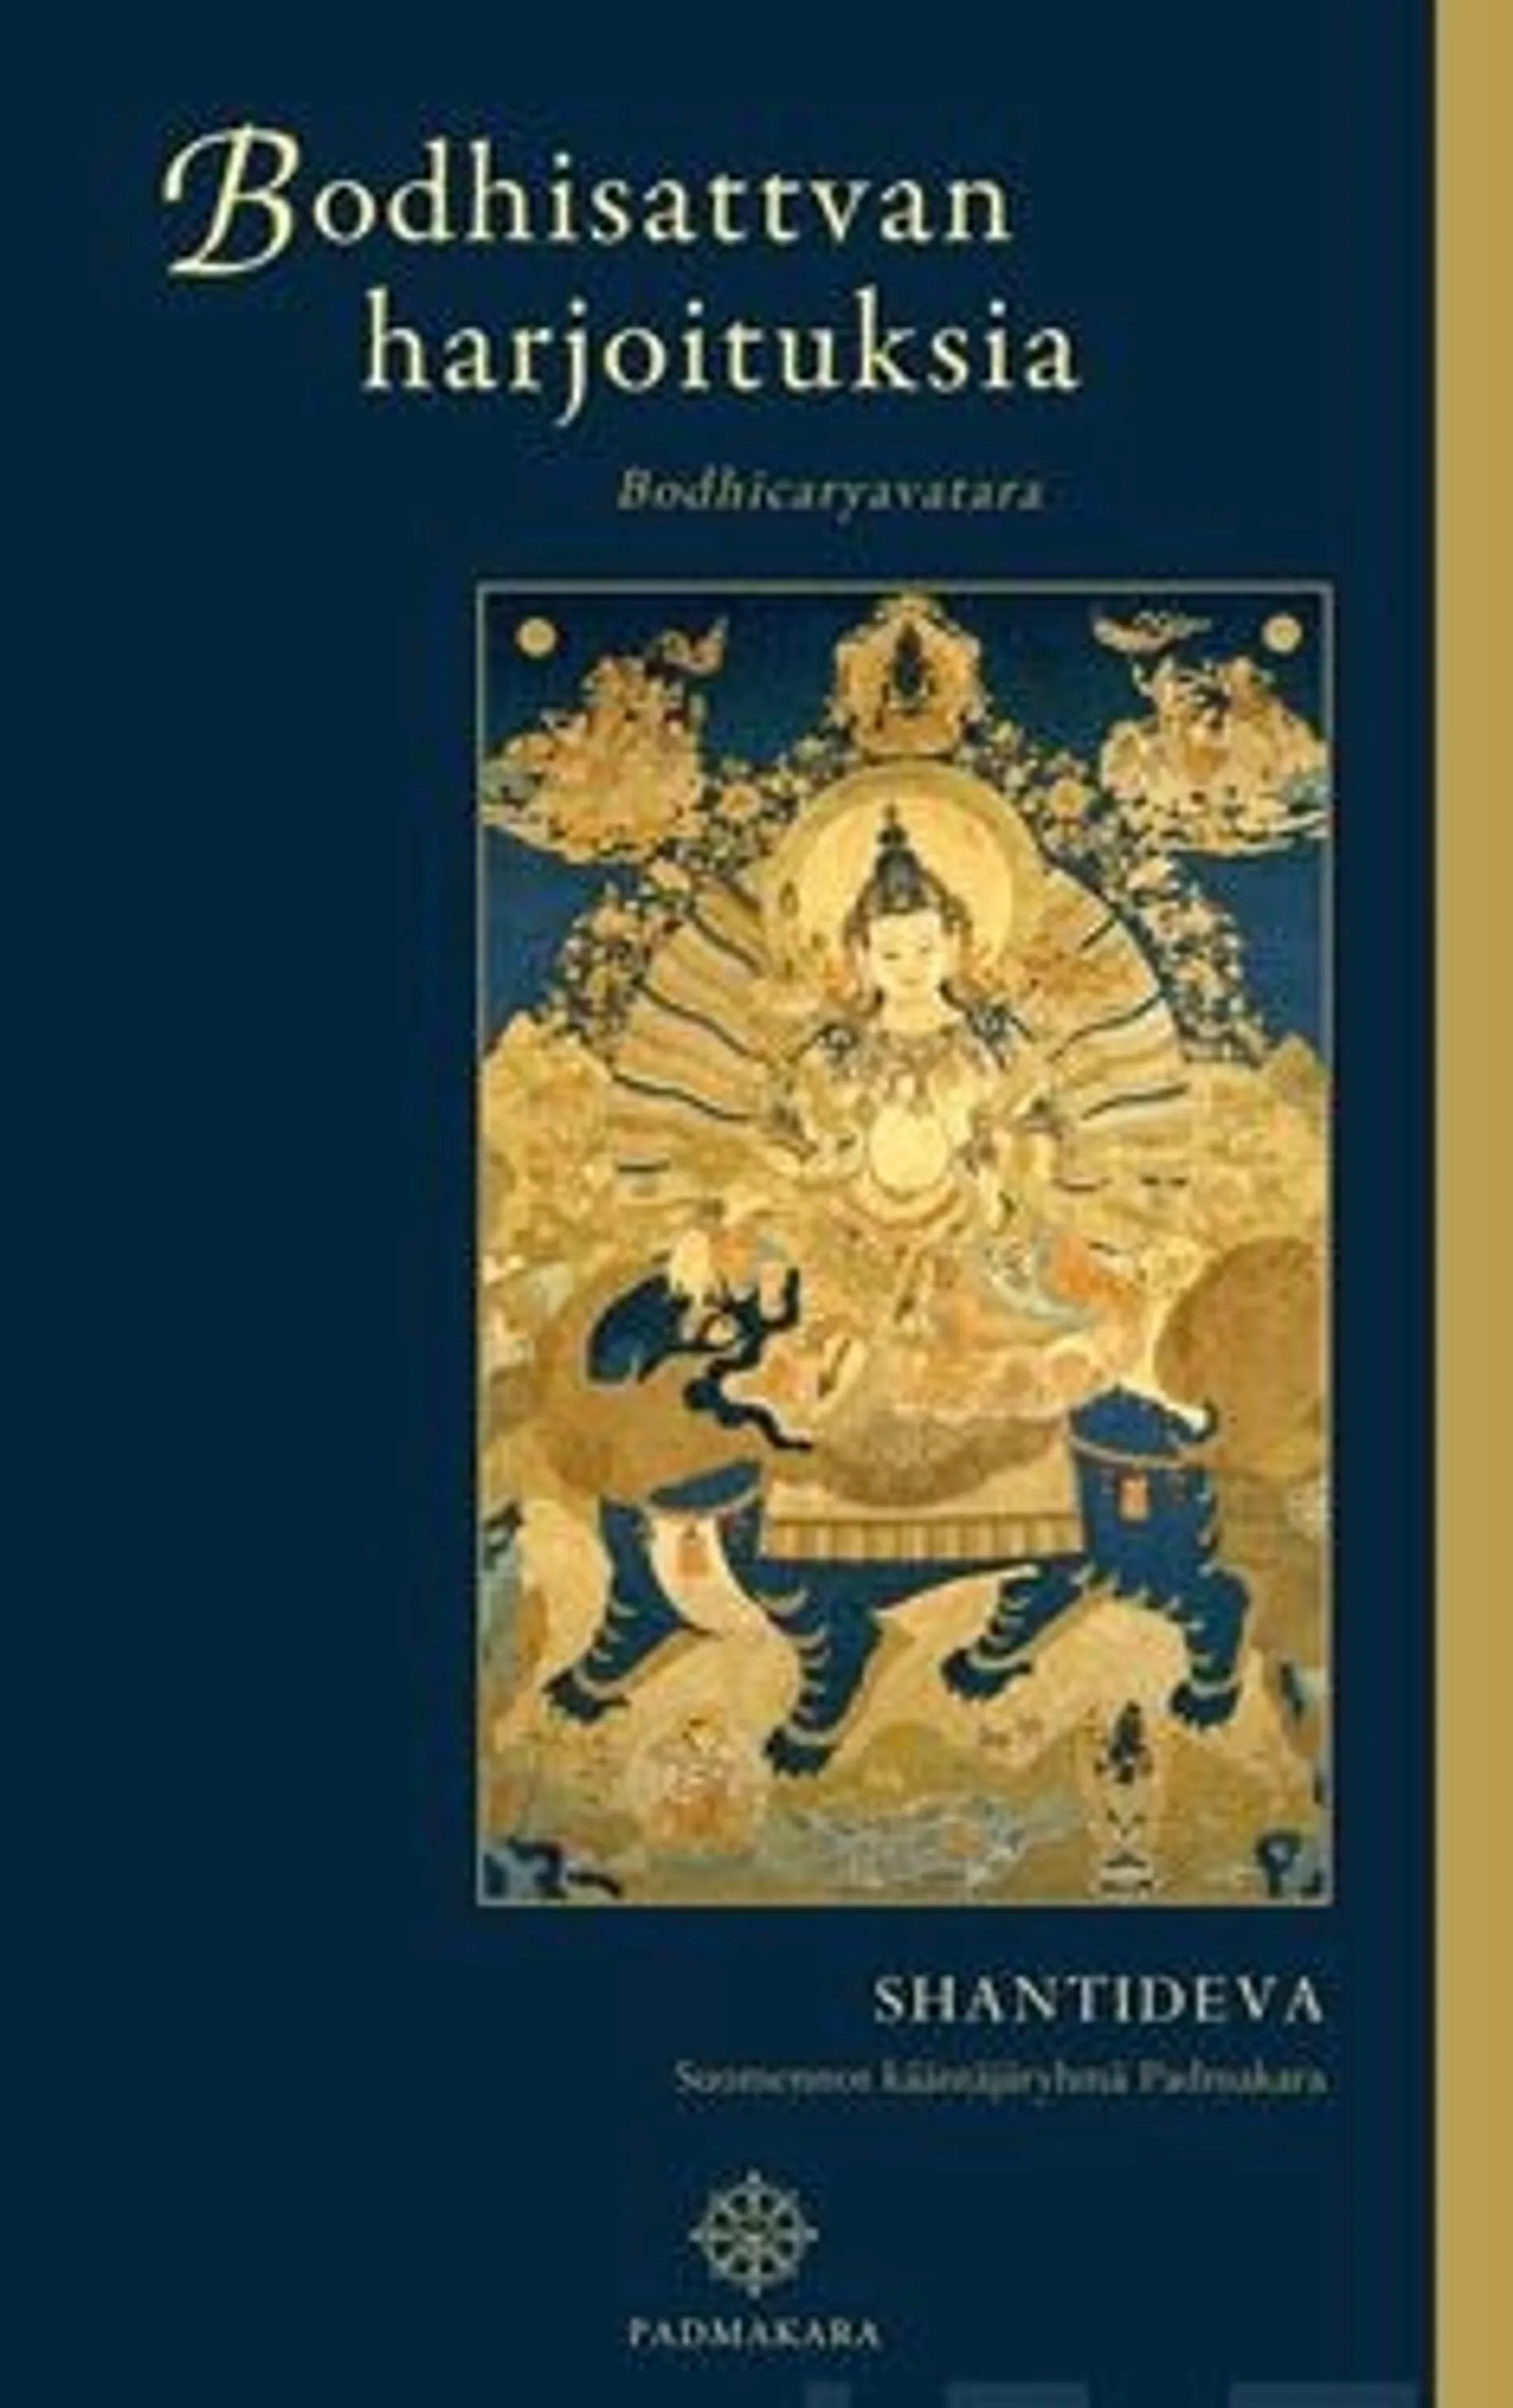 Shantideva, Bodhisattvan harjoituksia - Bodhicaryavatara